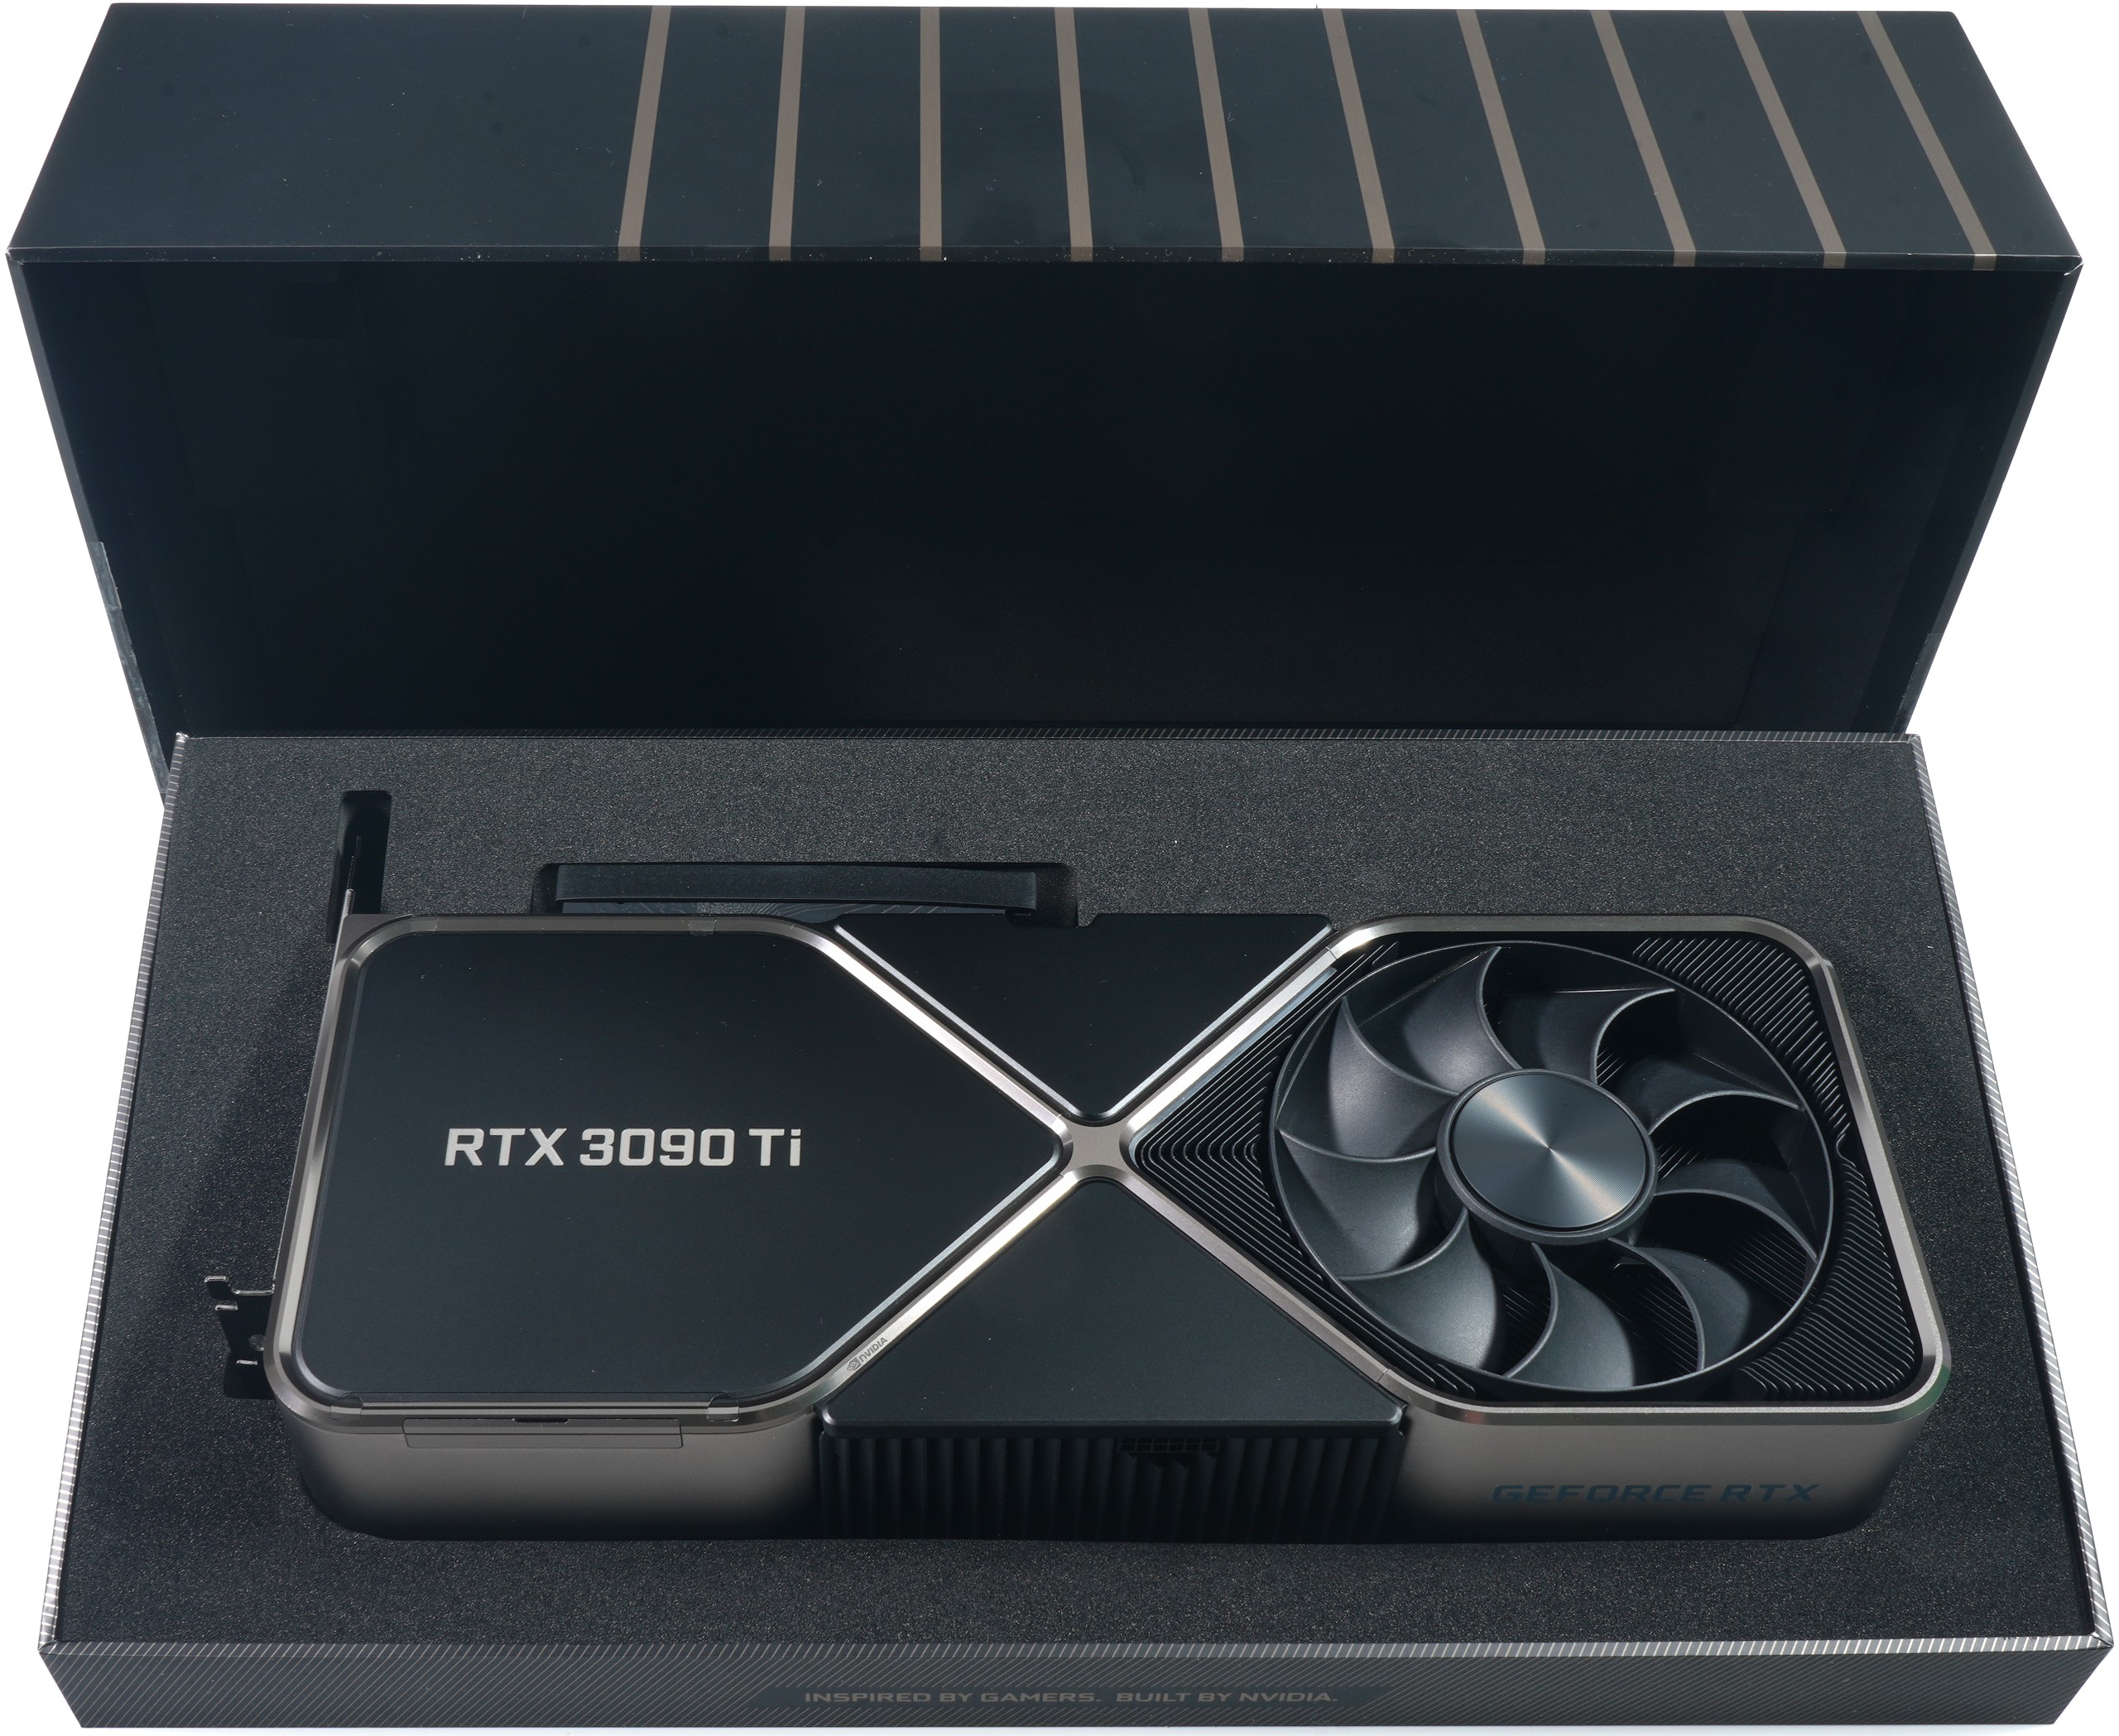 NVIDIA GeForce RTX 3090 Ti FE im Studio- und Workstation-Alltag - Showdown gegen die RTX A6000 und die 300-Watt-Sparversion